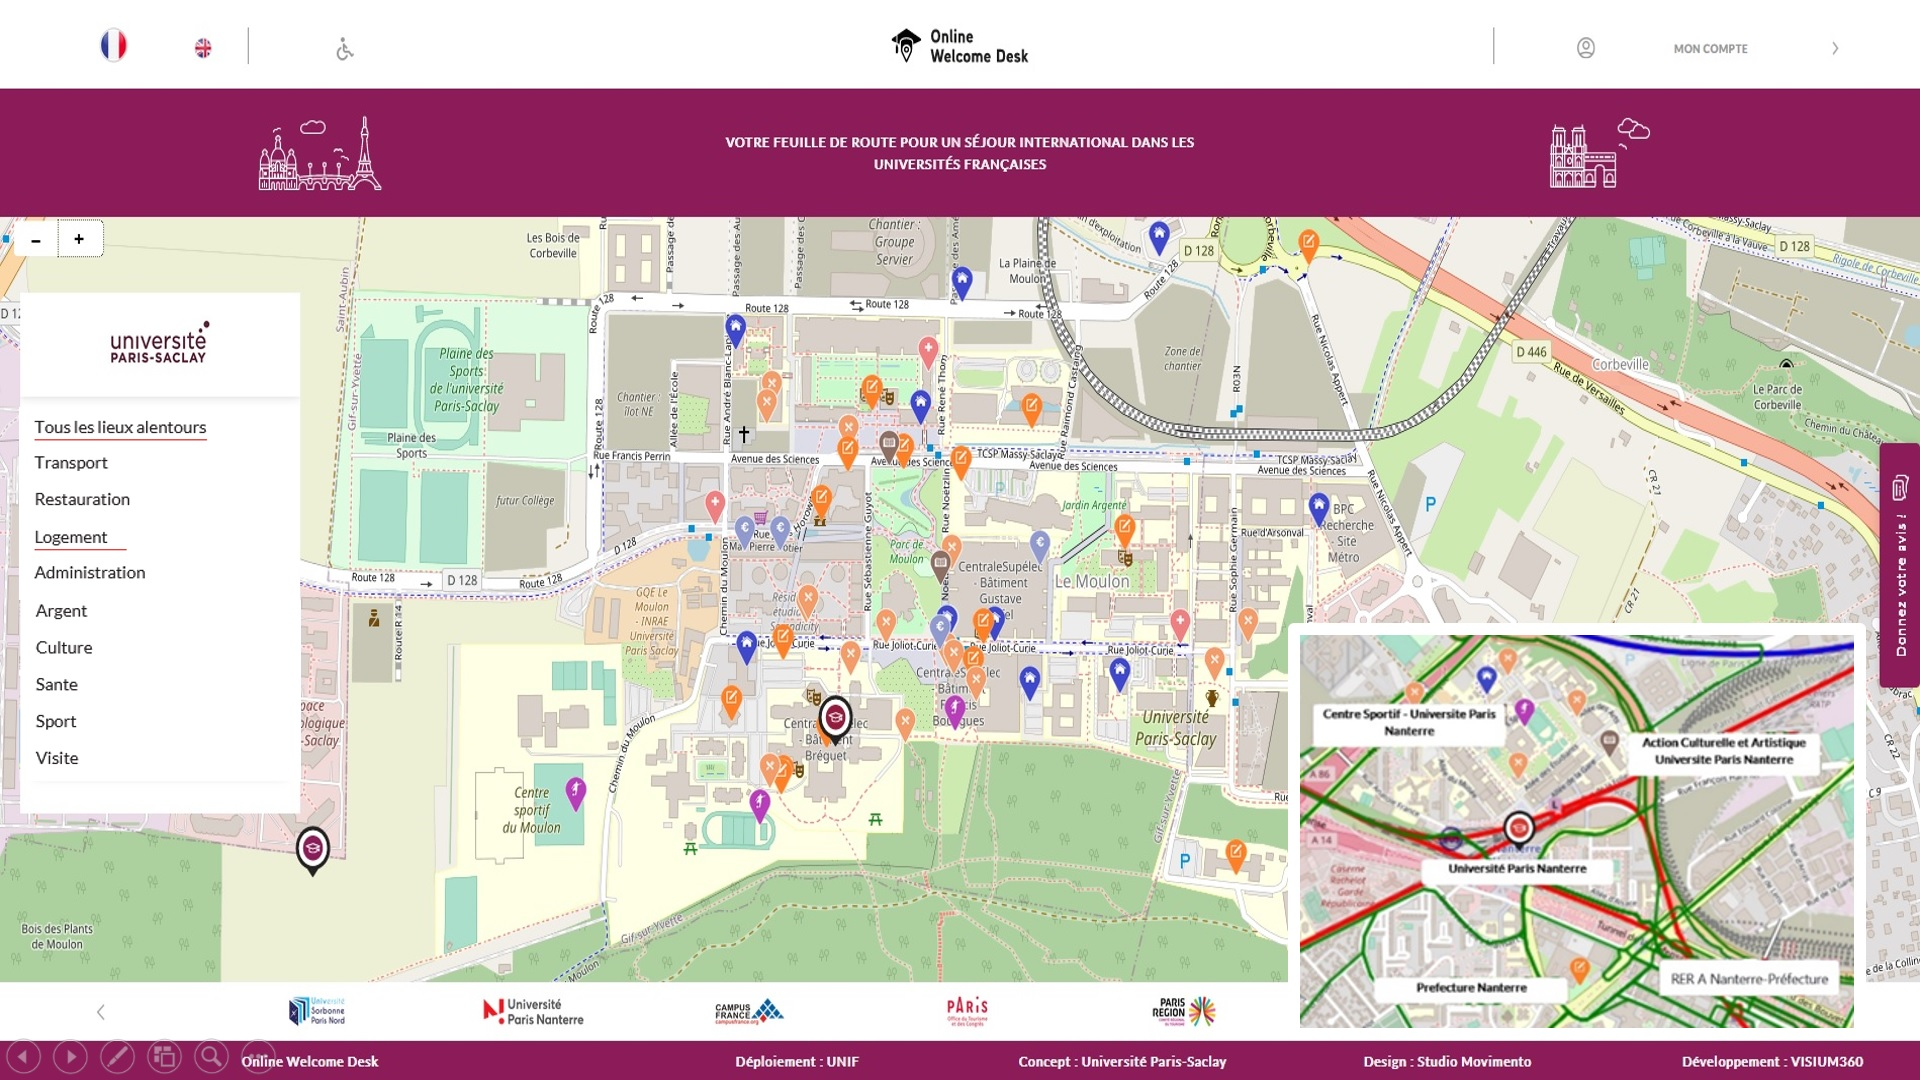 Carte géographique permettant aux chercheurs et aux étudiants internationaux de se projeter dans leur nouvel environnement, disponible sur Online Welcome Desk, le portail développé par l'UNIF pour l'accueil des chercheurs et des étudiants internationaux.